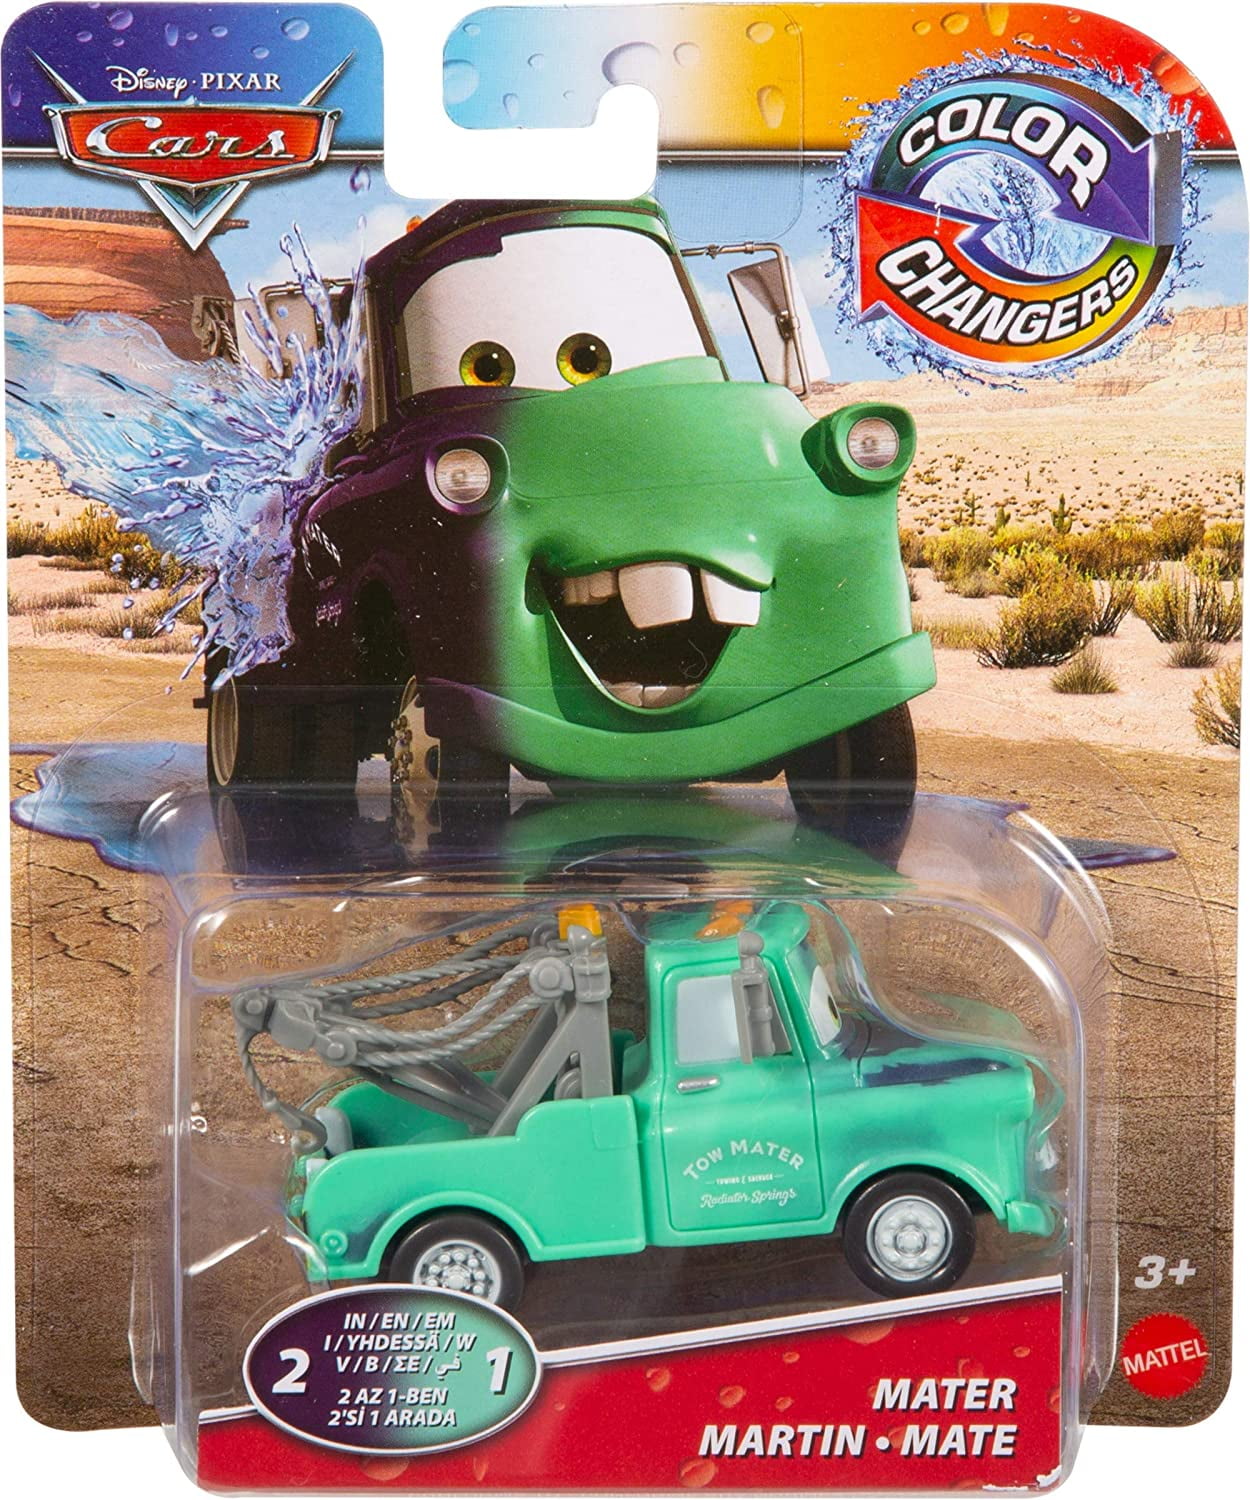 Disney Pixar Cars Color Changers 2-in-1 MATER 1:55 Mattel NEW Rare! 